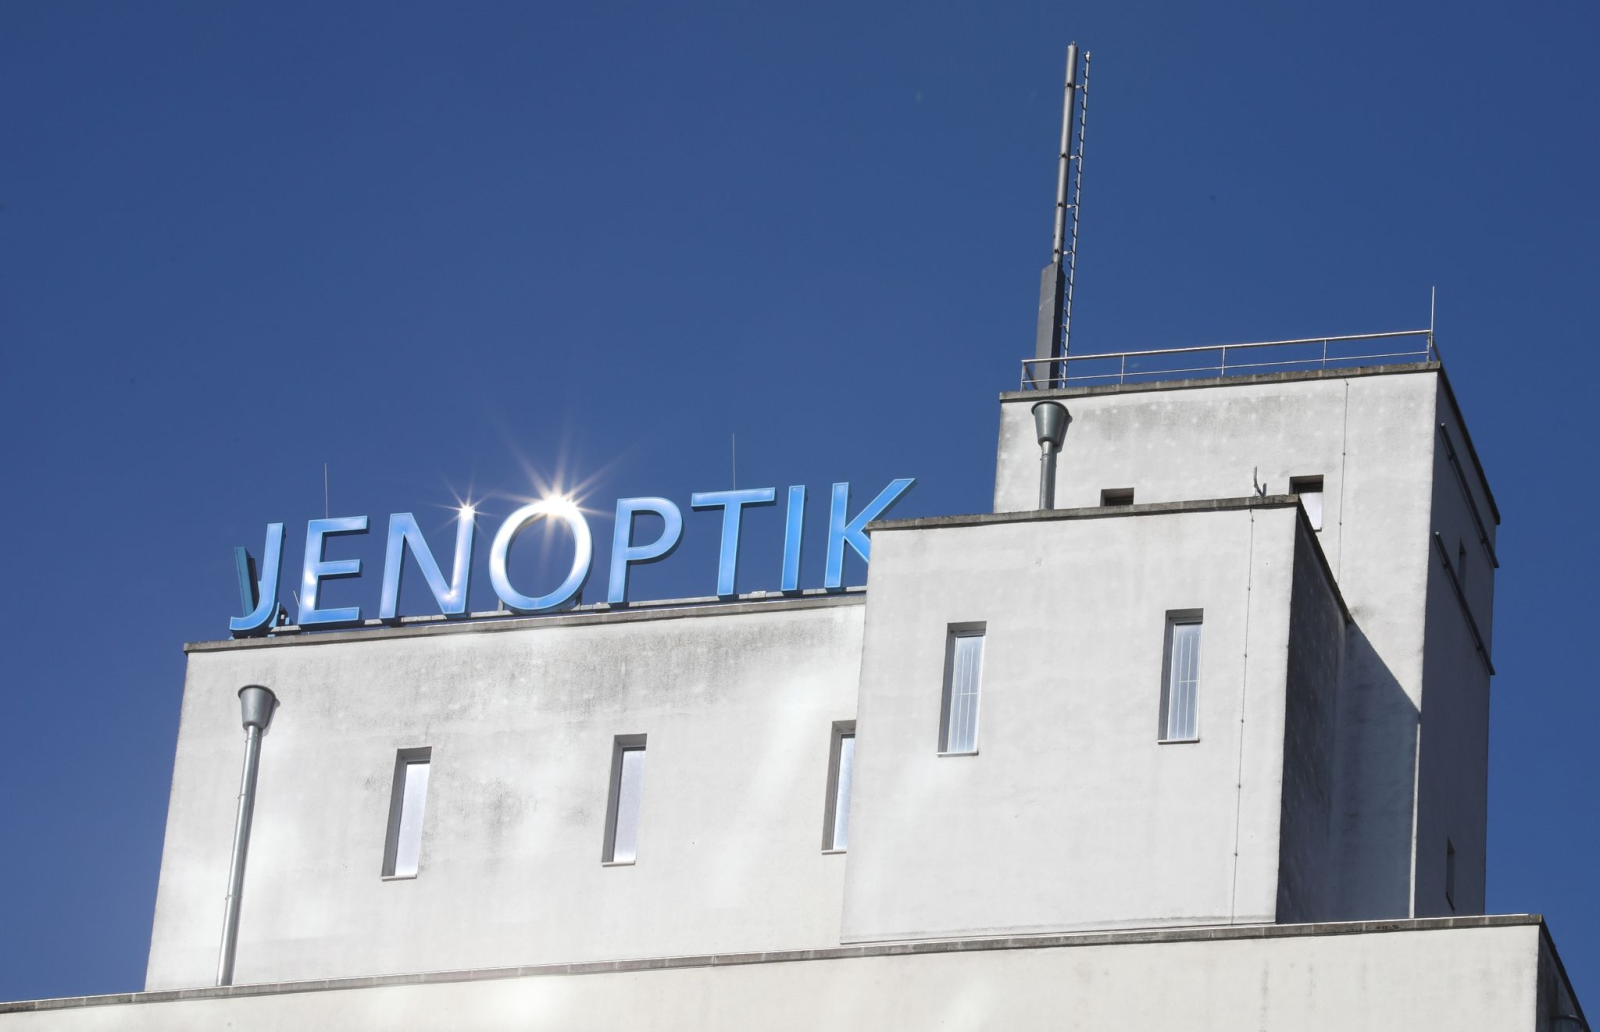 Die Sonne spiegelt sich im Schriftzug «Jenoptik» auf dem Dach des Verwaltungsgebäudes der Jenoptik AG.